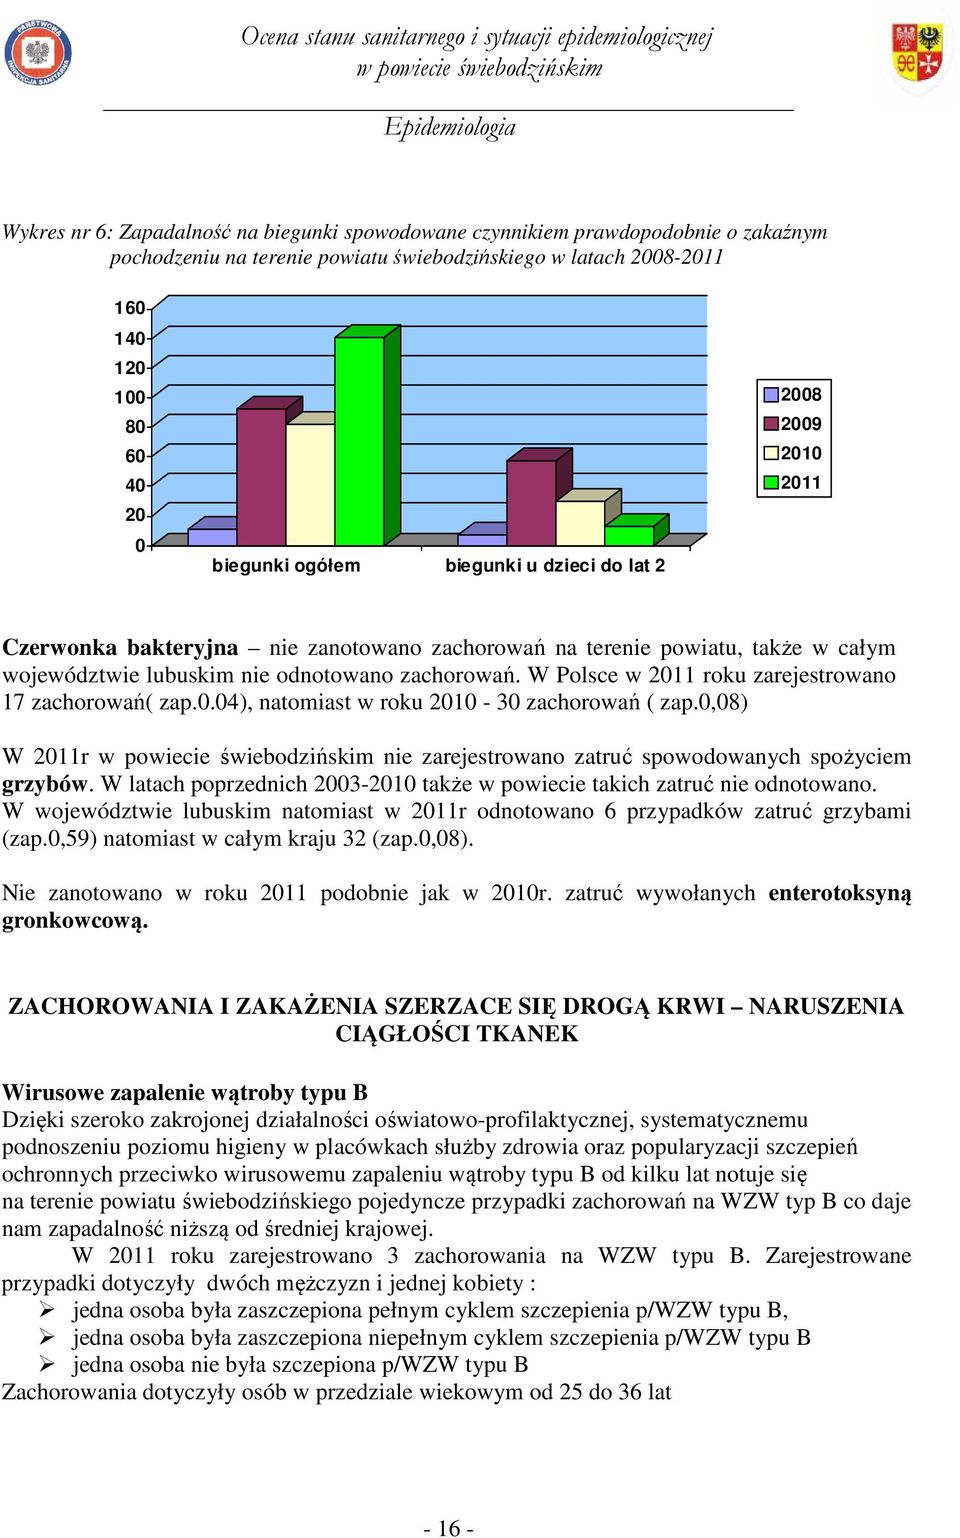 W Polsce w 2011 roku zarejestrowano 17 zachorowań( zap.0.04), natomiast w roku 2010-30 zachorowań ( zap.0,08) W 2011r nie zarejestrowano zatruć spowodowanych spożyciem grzybów.